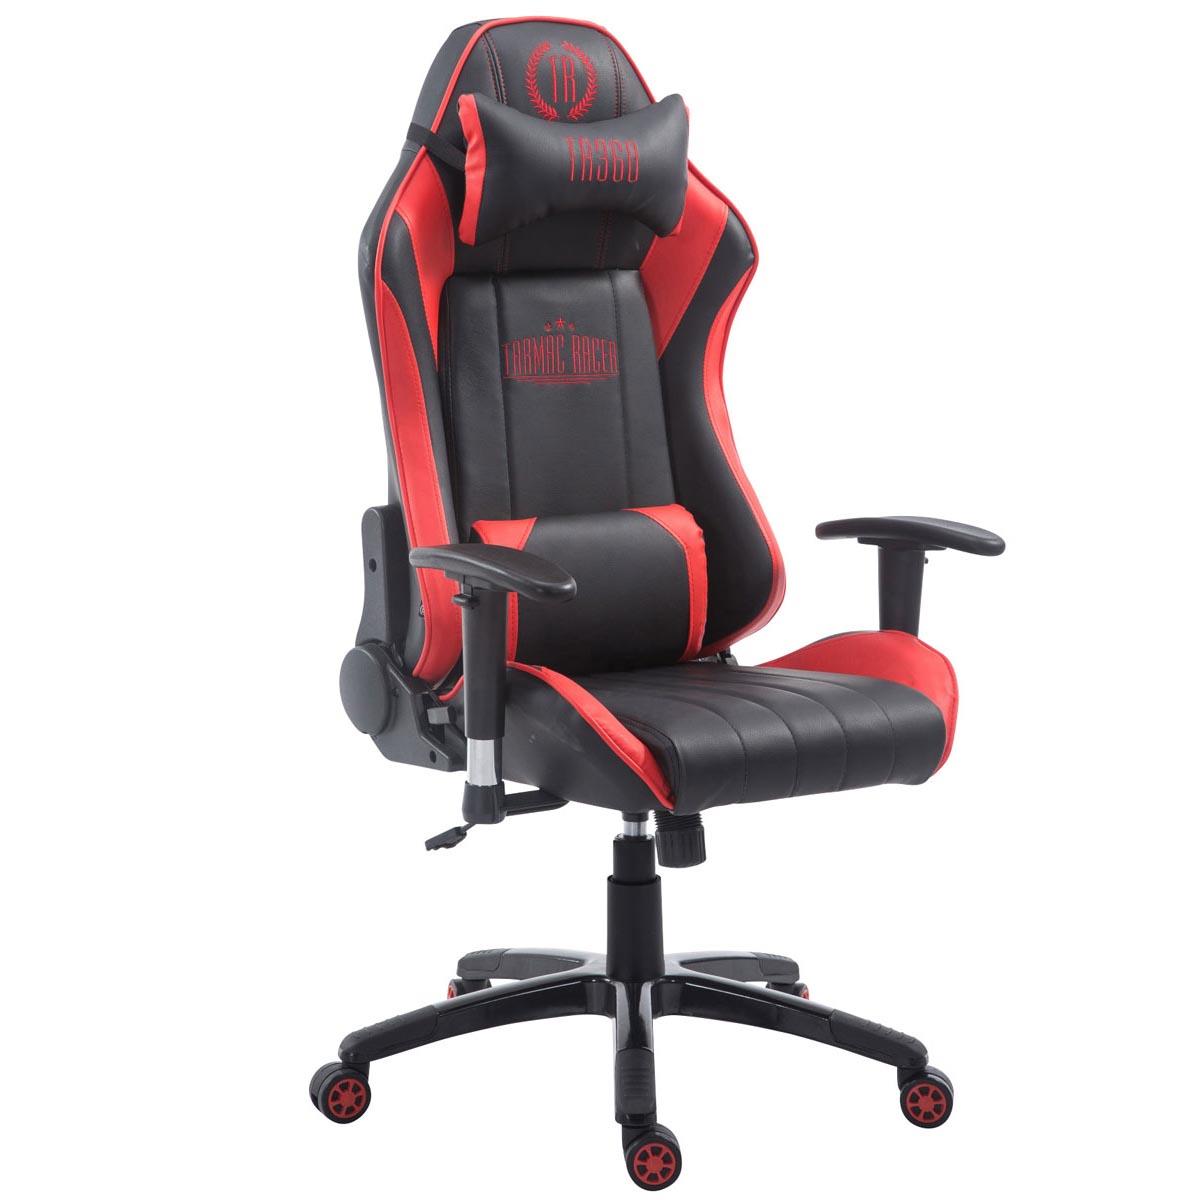 Gaming-Stuhl TURBO LEDER, neigbare Rückenlehne, Nacken- und Lordosekissen, Farbe Schwarz / Rot